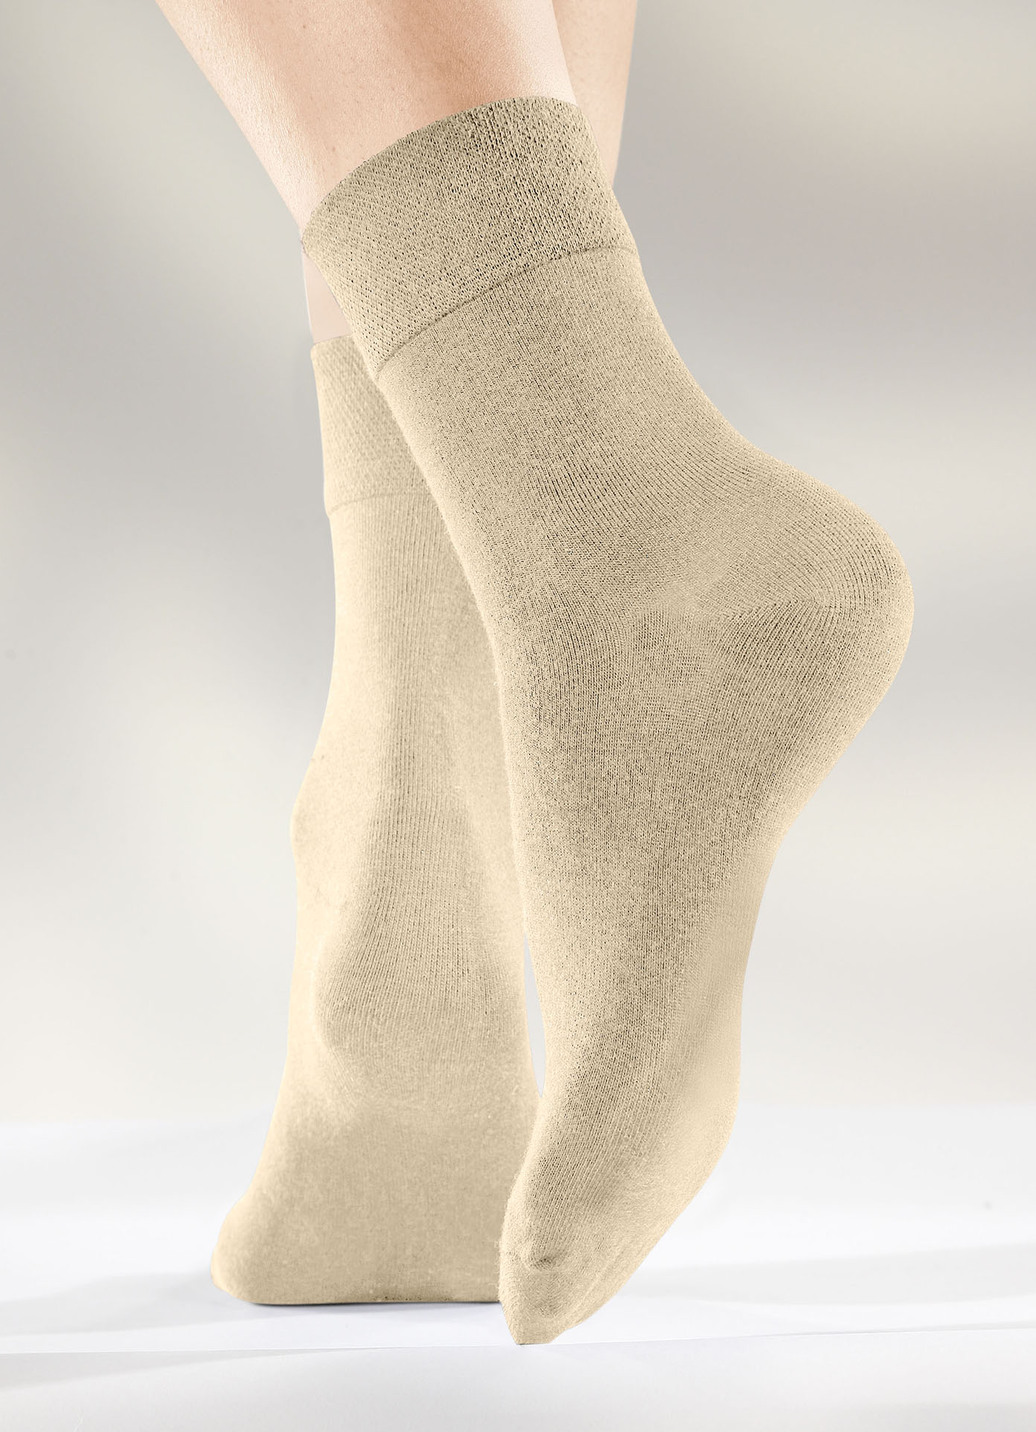 Sechserpack Socken in verschiedenen Farbstellungen, 2X Beige, 2X Sand, 2X Khaki, Größe 1 (Schuhgr. 35-38) von BADER